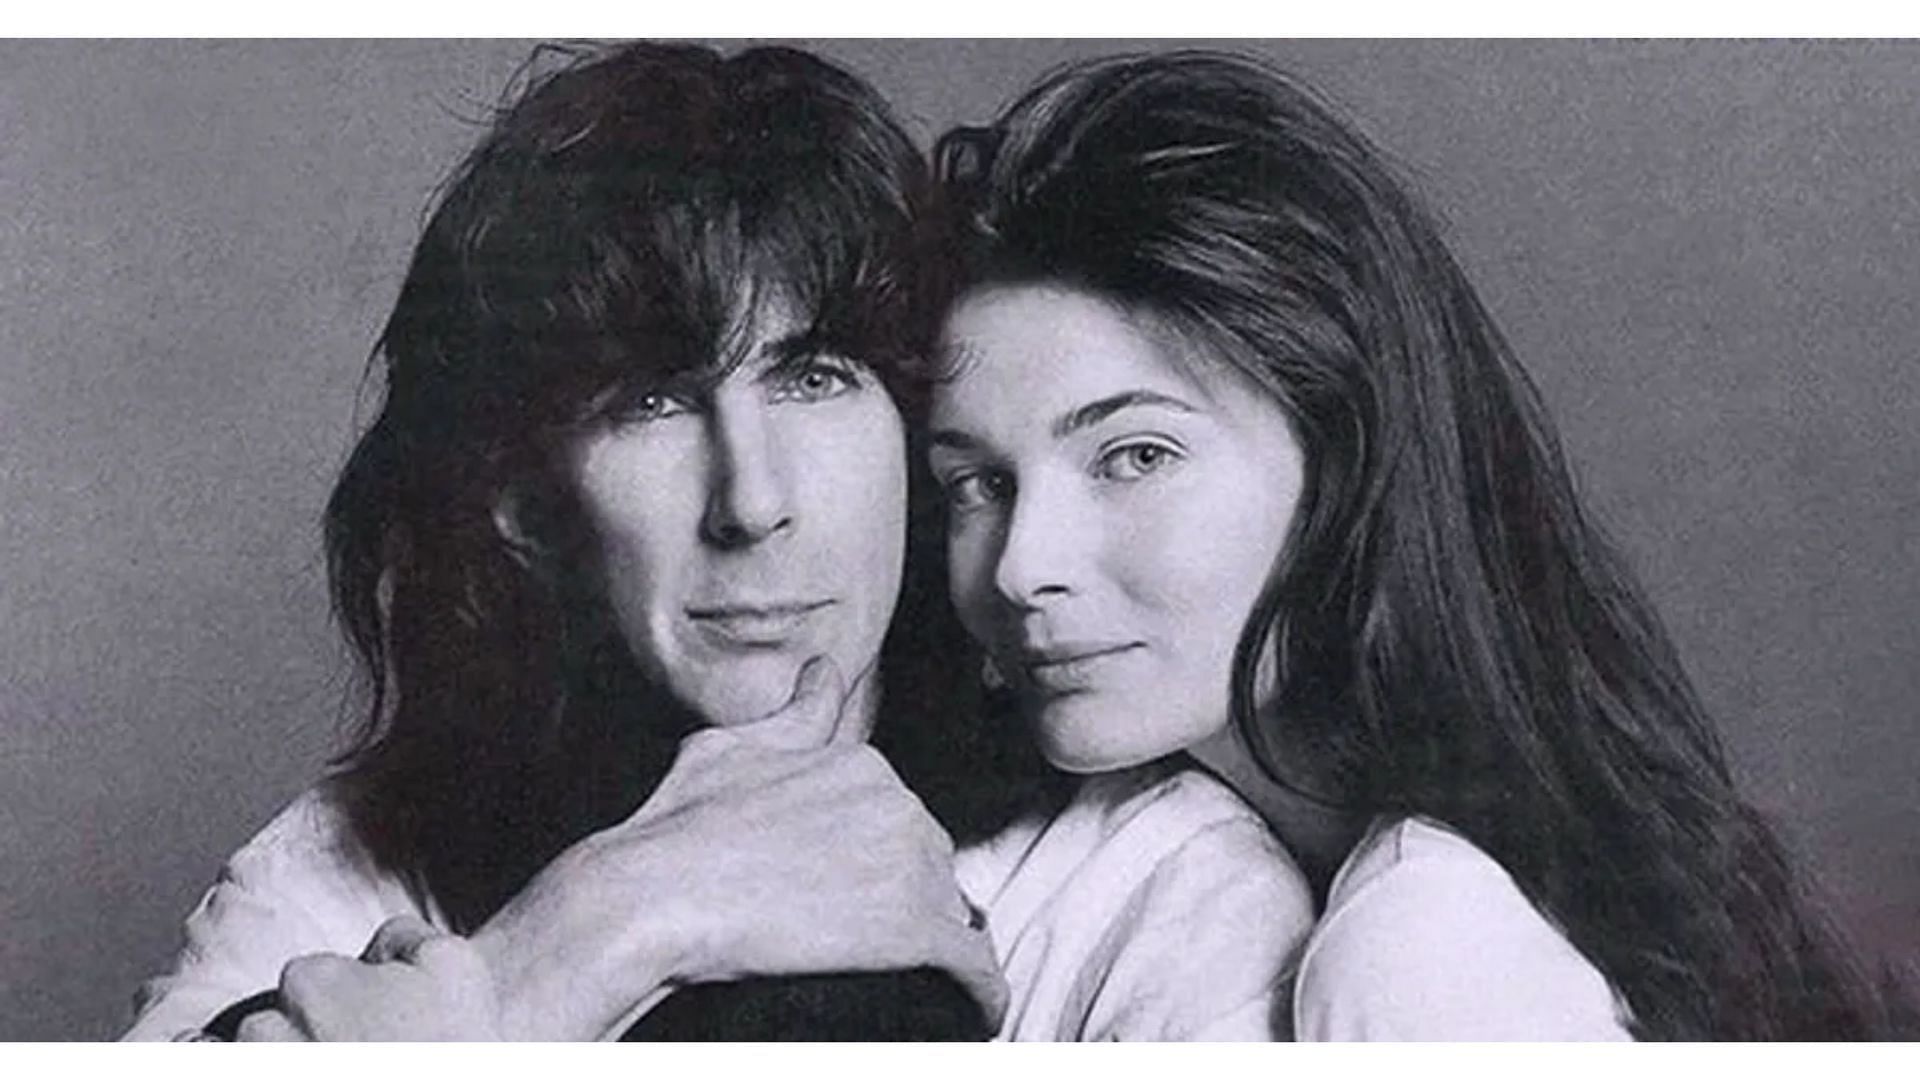 The duo met in 1984 (image via Instagram)